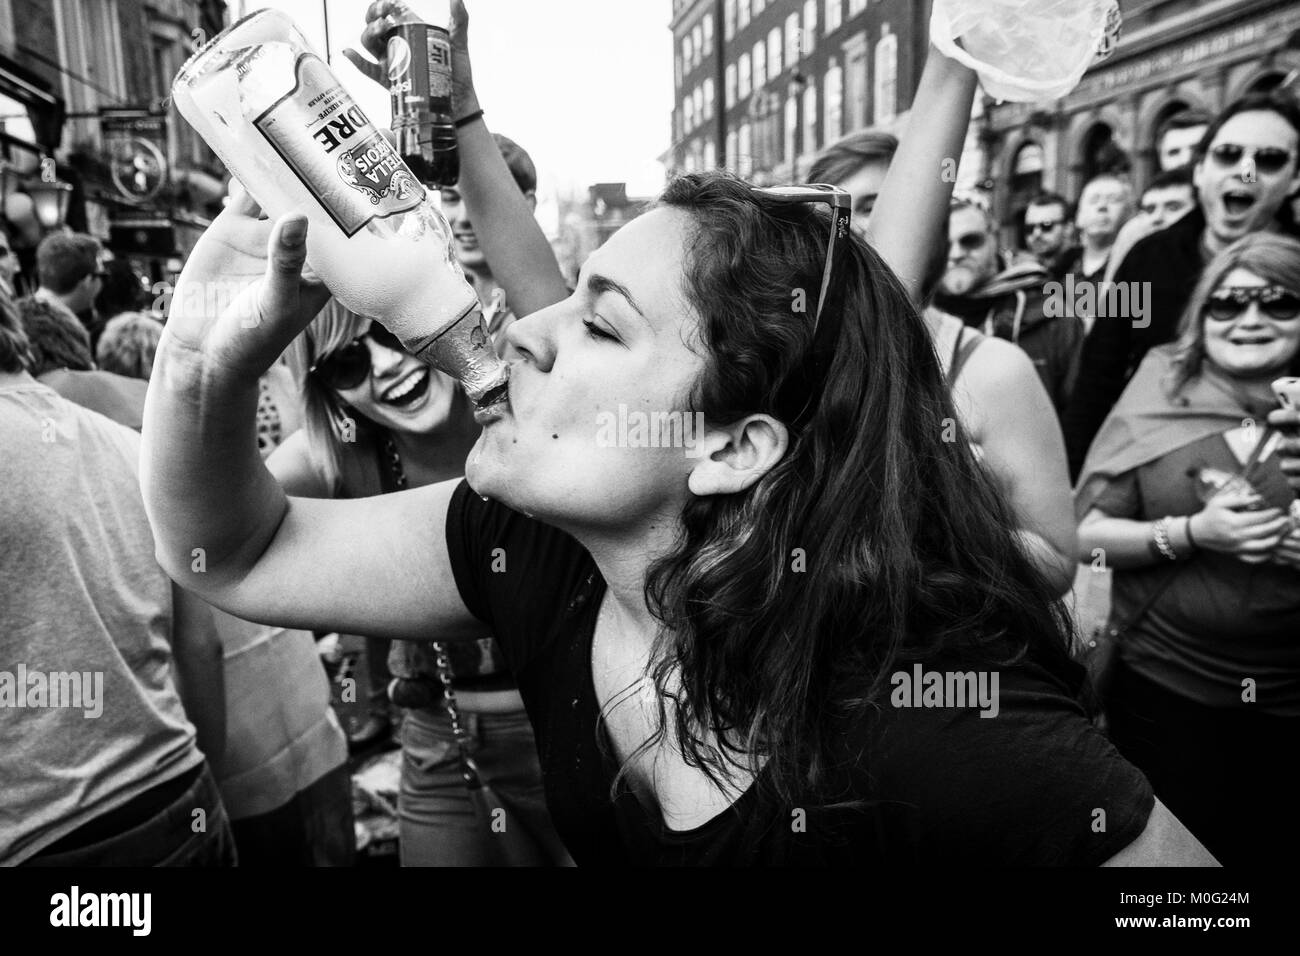 Schwarz-weiße Straßenfotografie in London: Junge Frau wird von der Menge angefeuert, als sie bei der Straßenparty aus der Flasche trinkt. Stockfoto